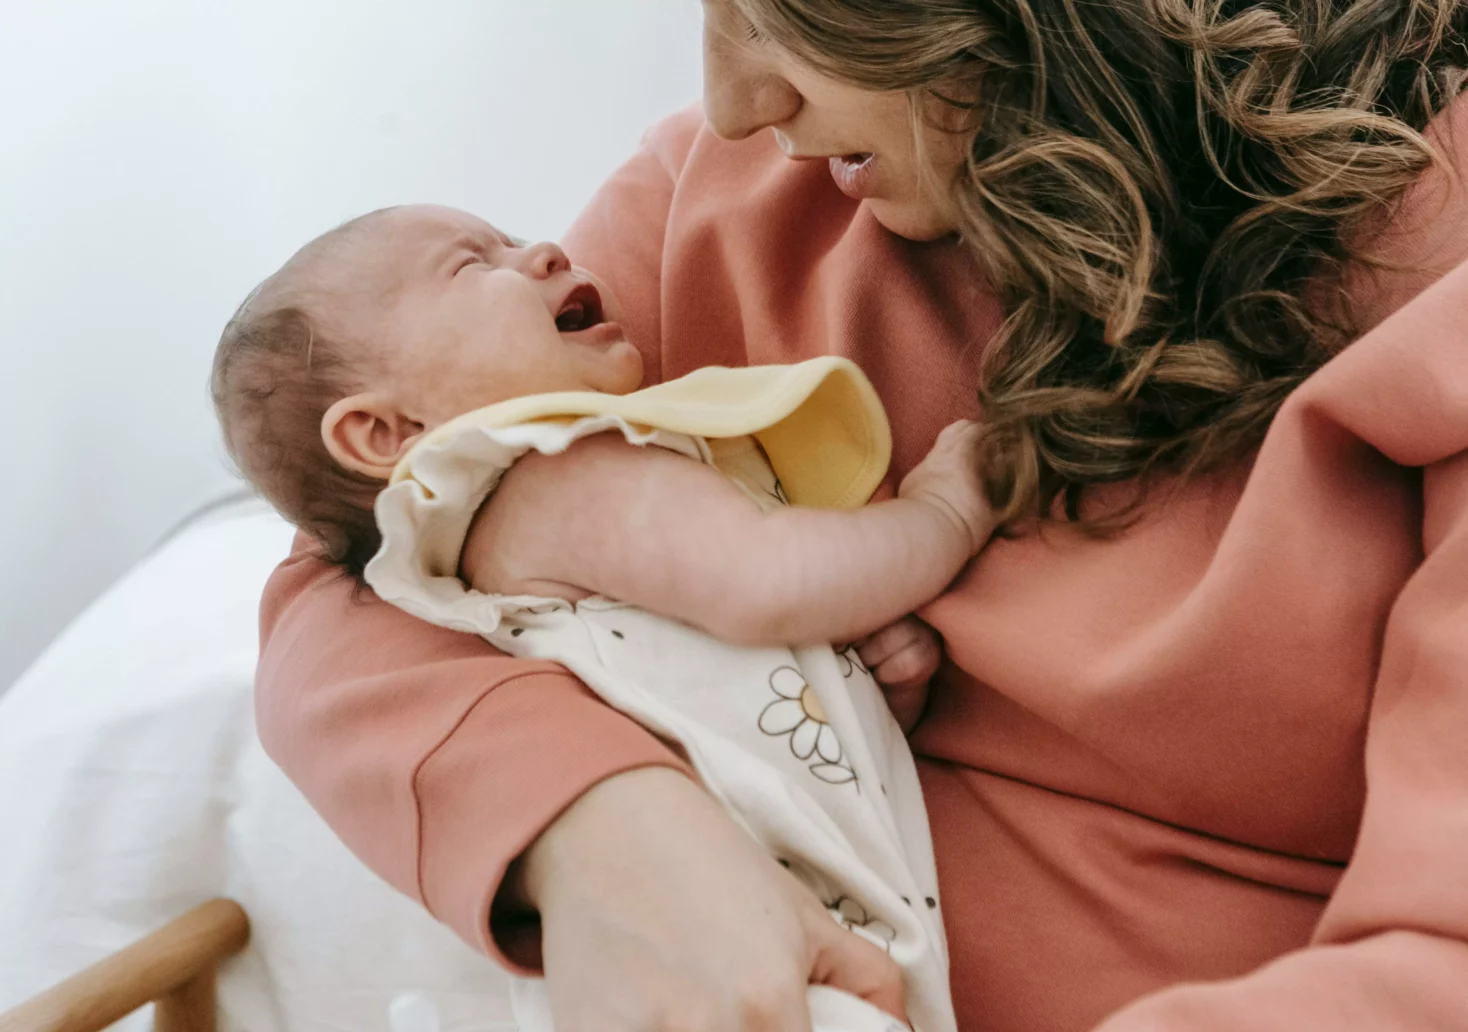 Bild auf 5min.at zeigt eine Mutter mit einem weinenden Baby im Arm.